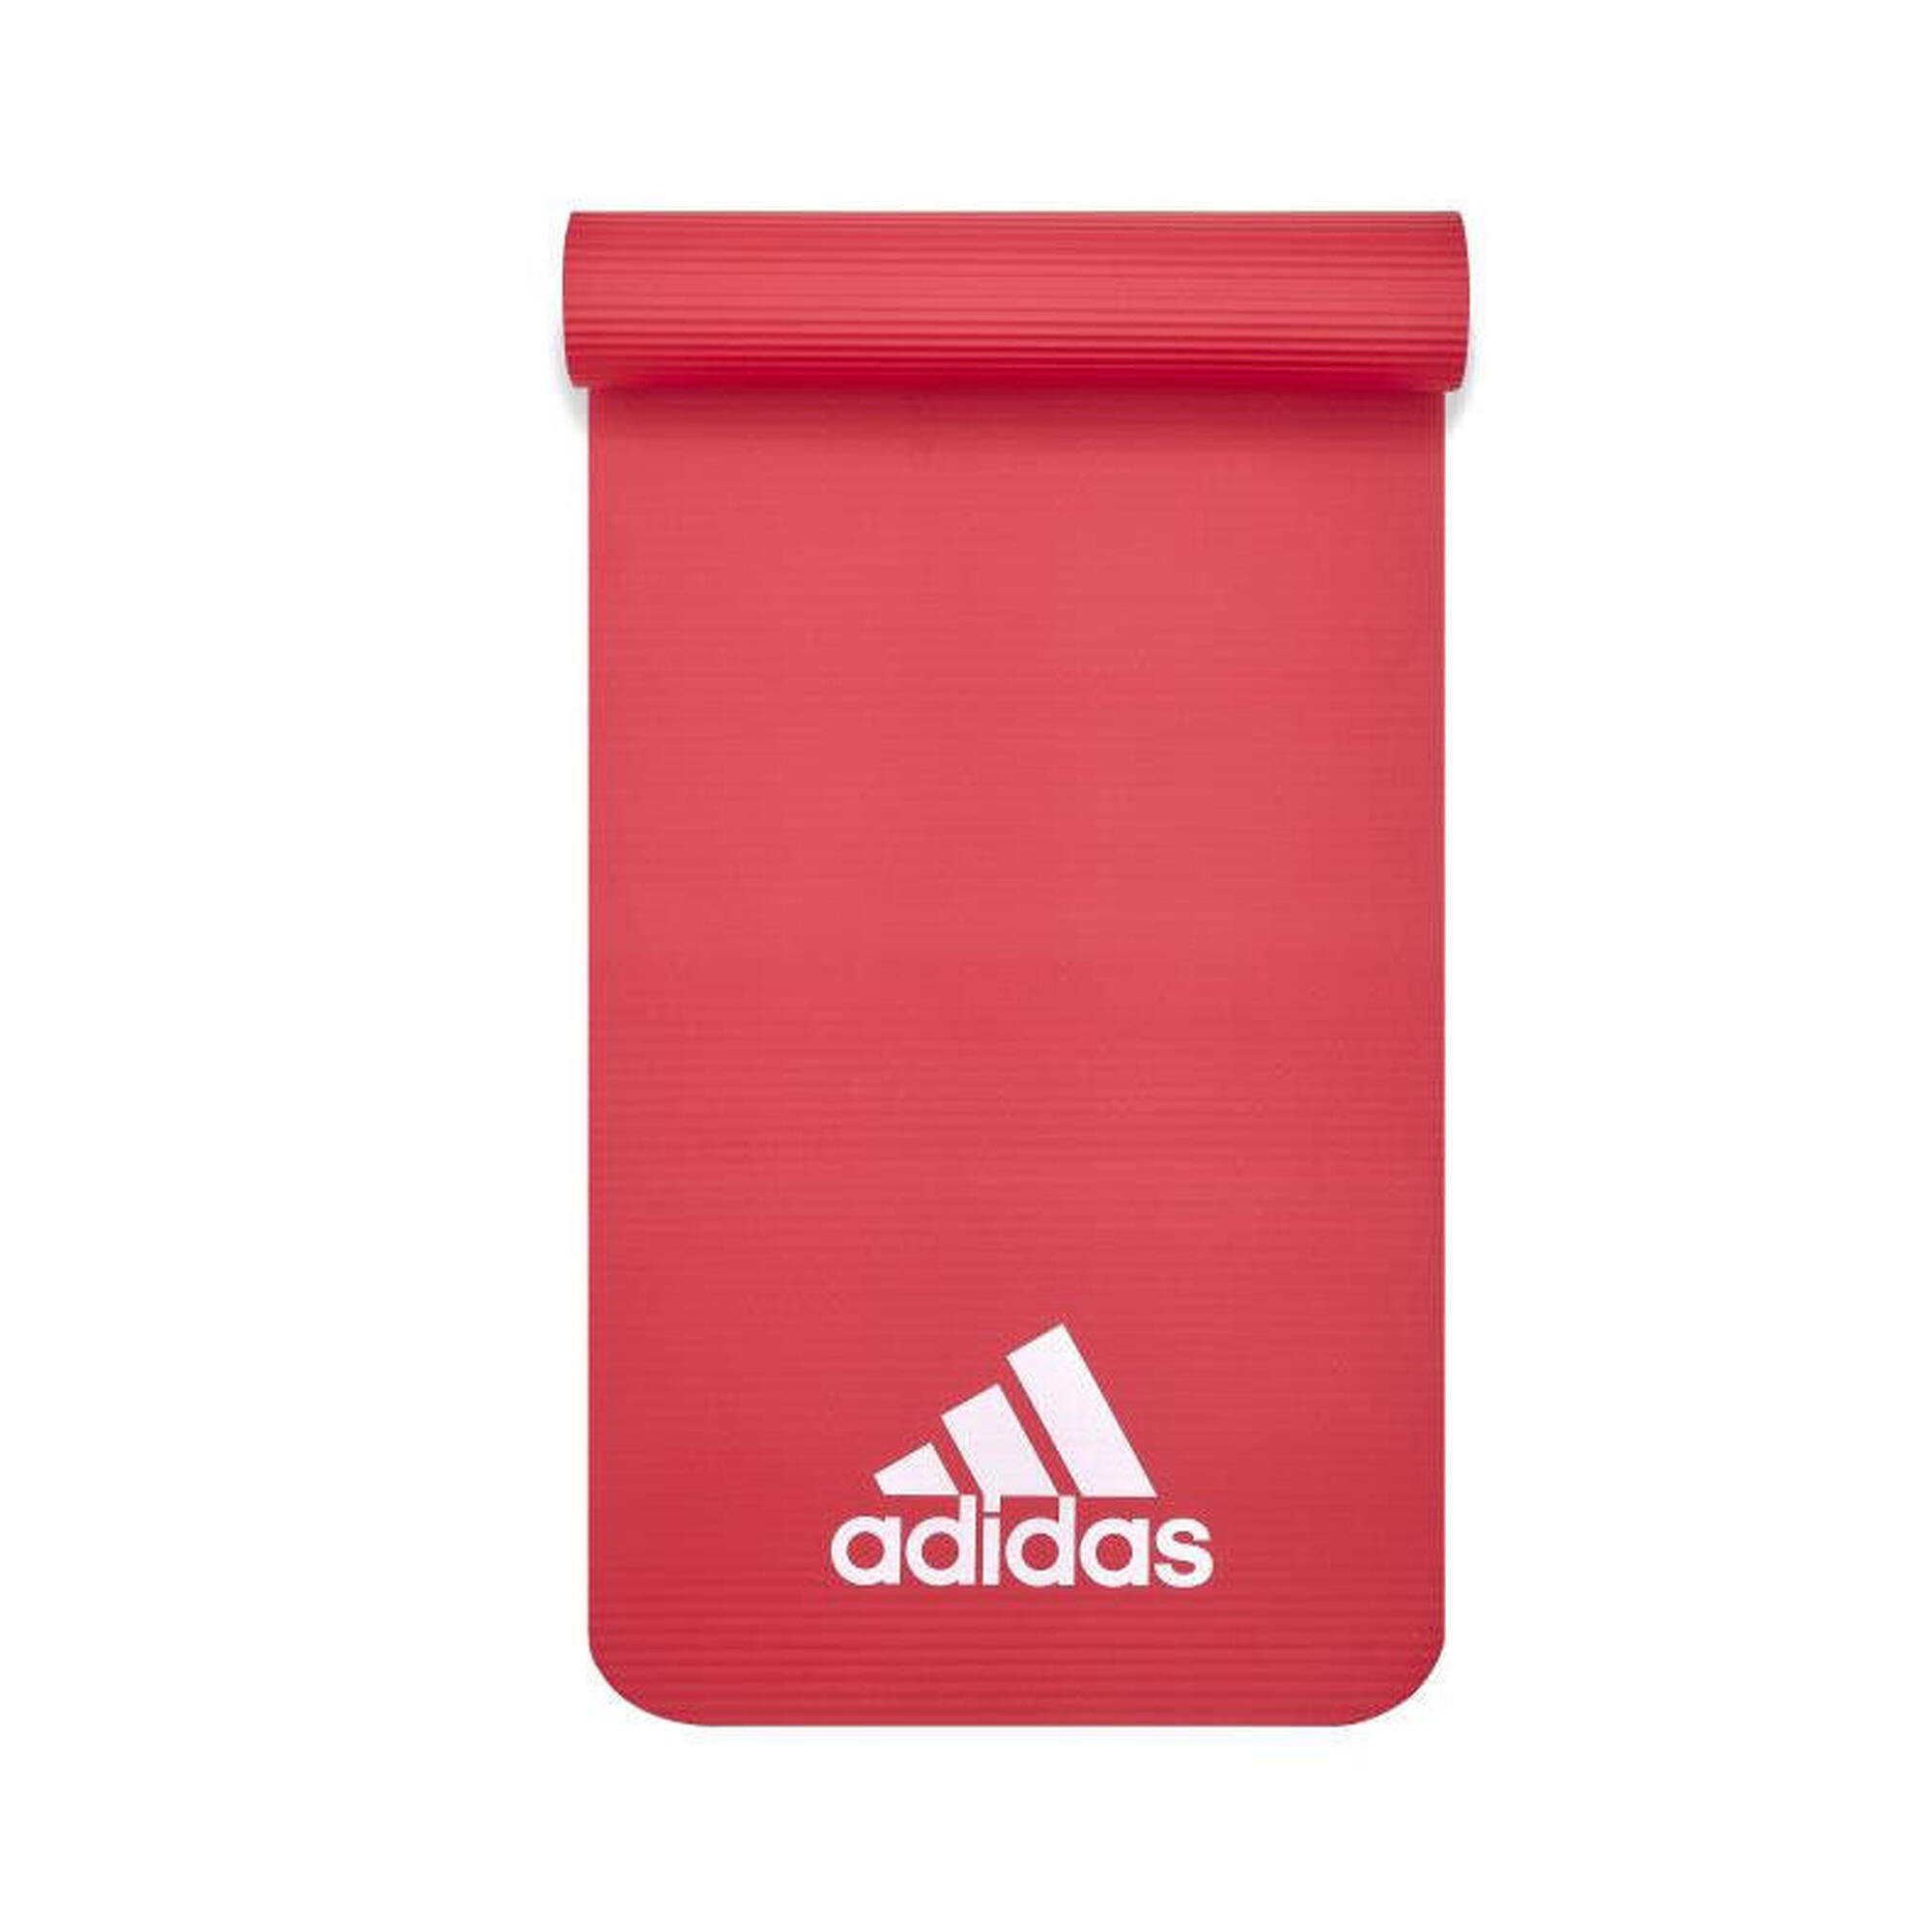 Tapete de fitness Adidas - 10mm - Vermelho